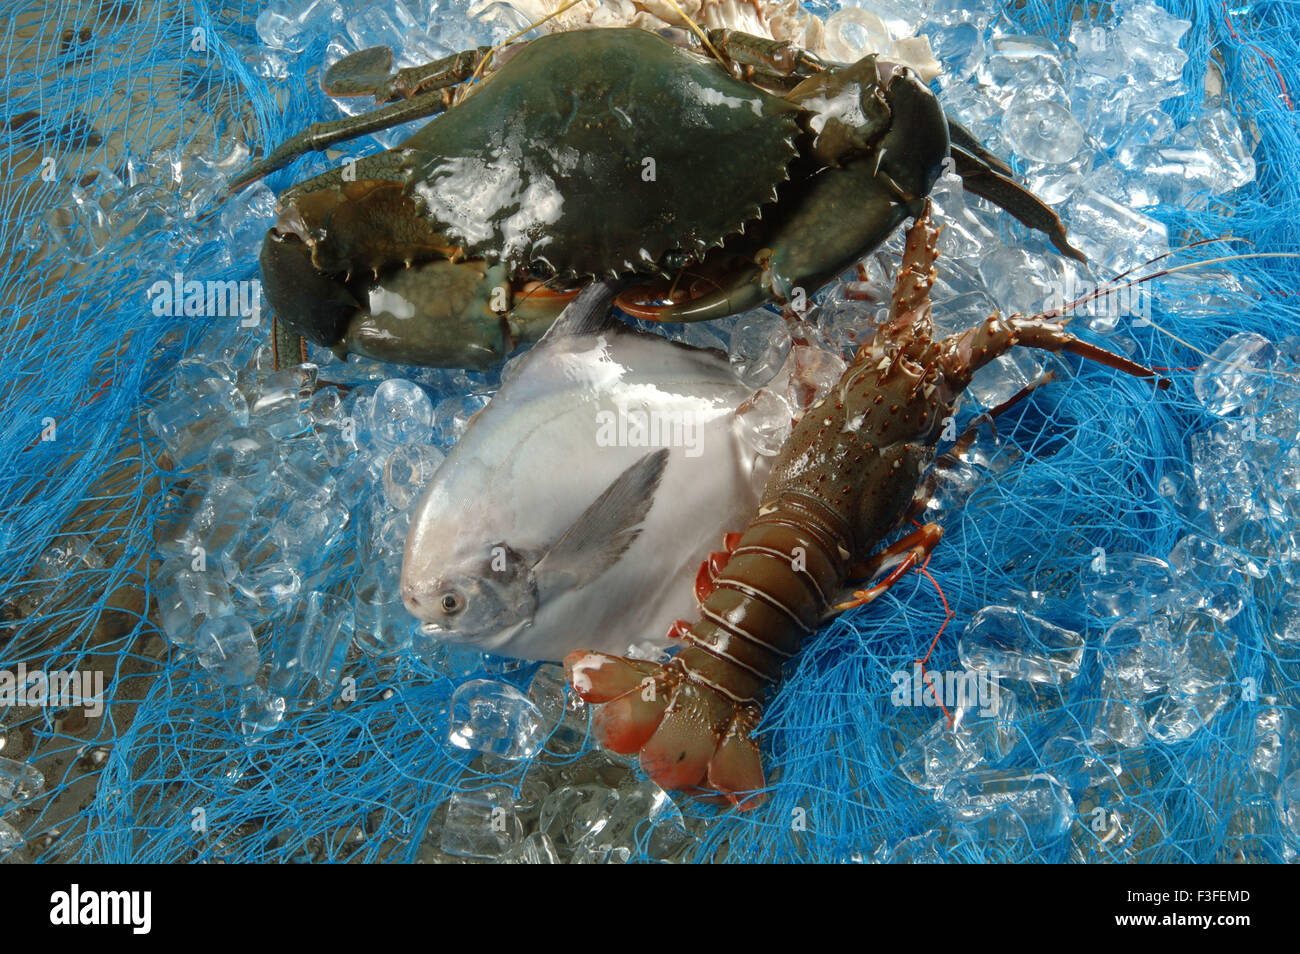 Non végétariens ; fruits de mer ; poissons morts pomfret gambas homards Banque D'Images